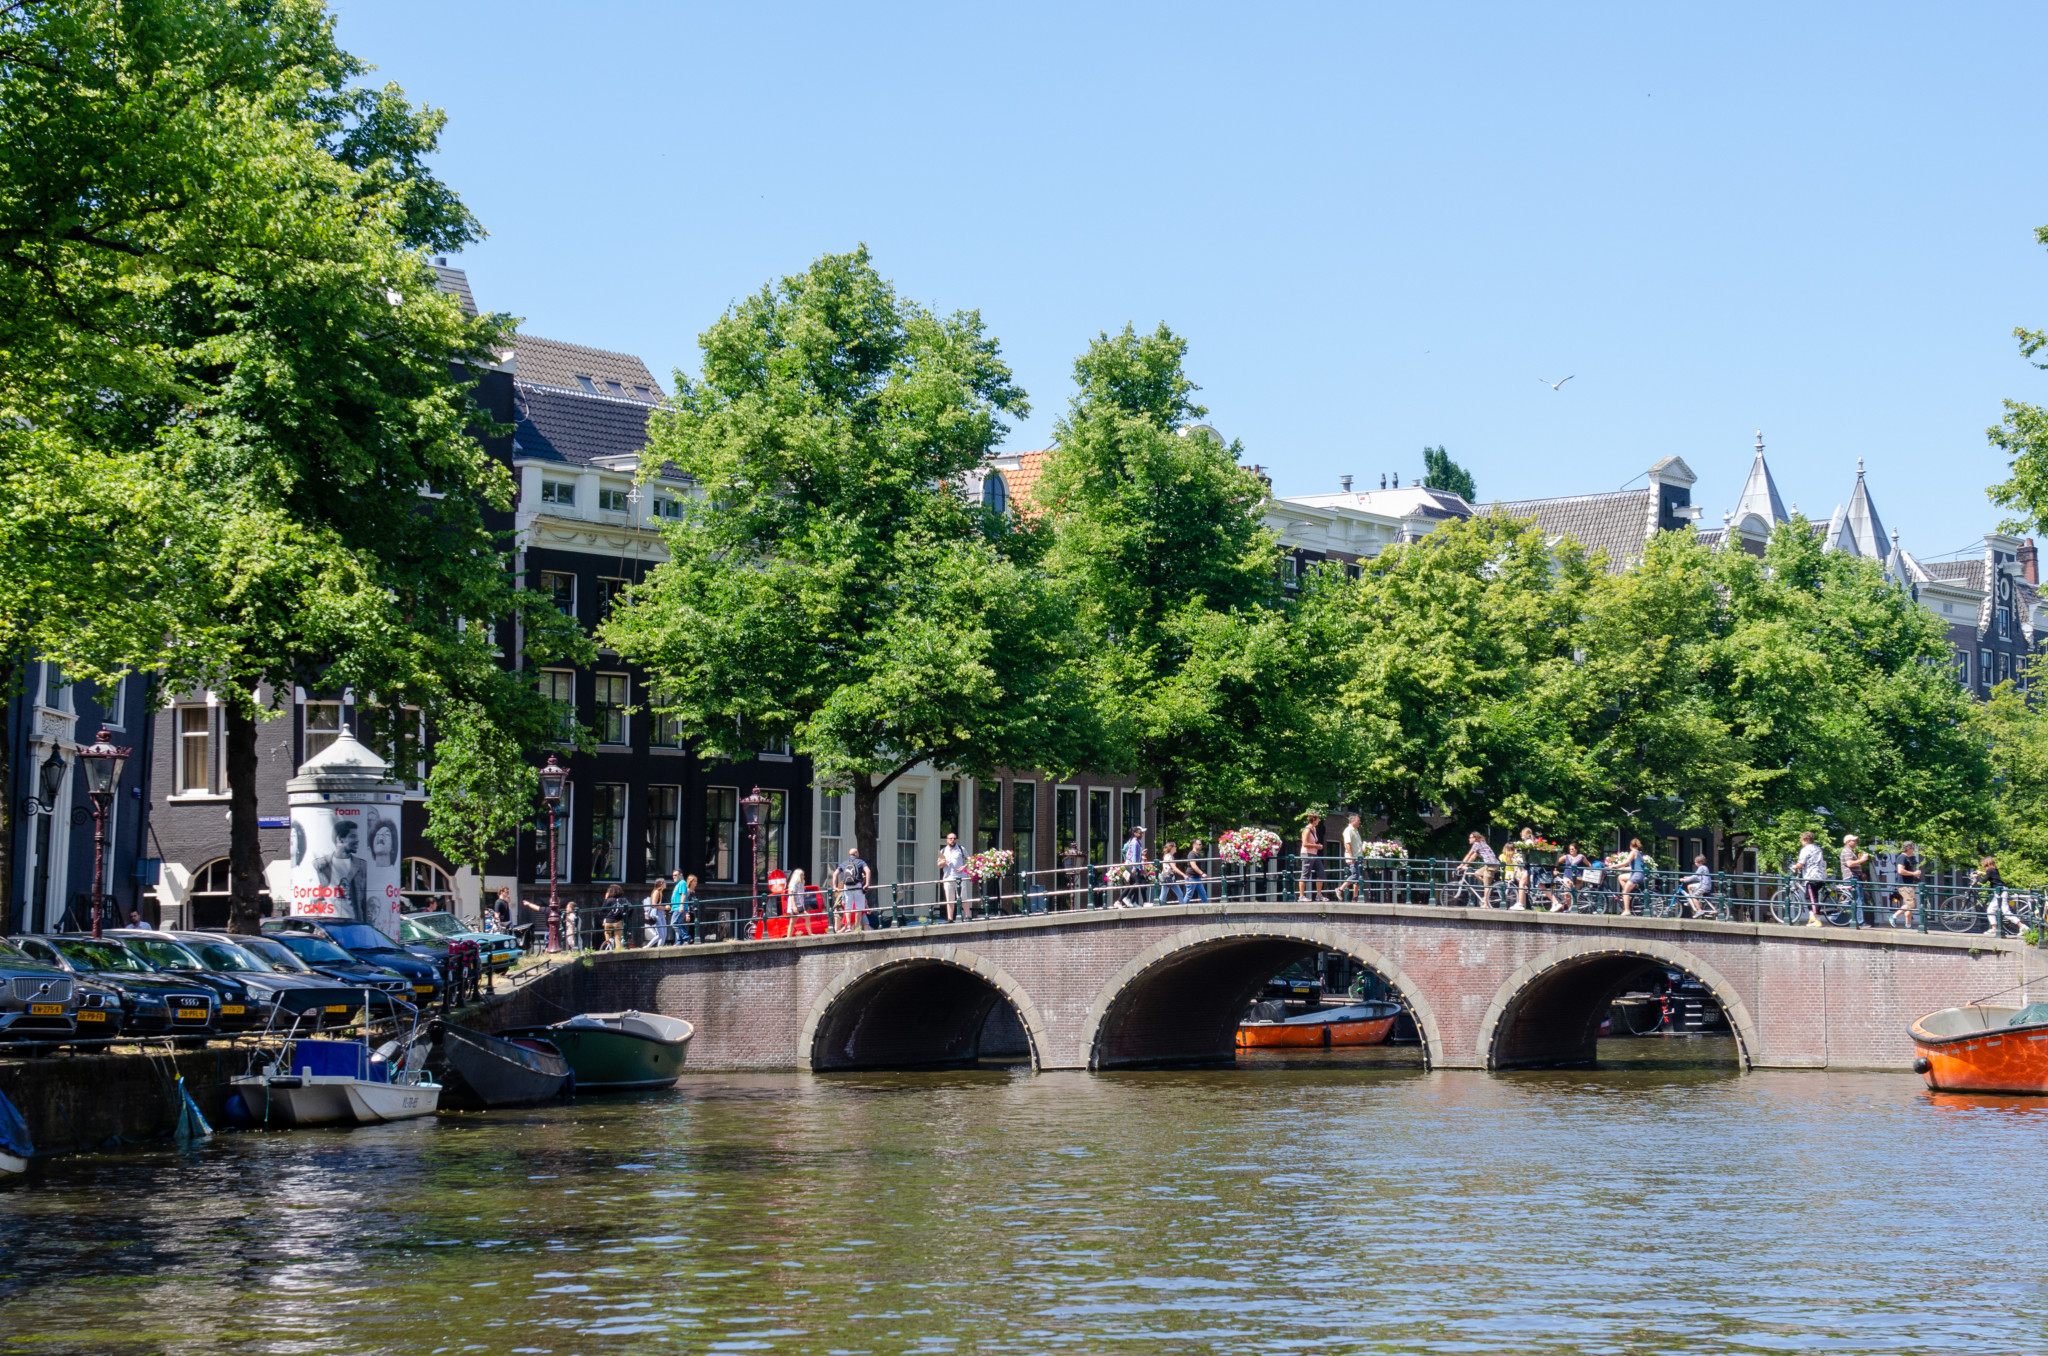 Amsterdam lohnt sich im Juli als Städtetrip